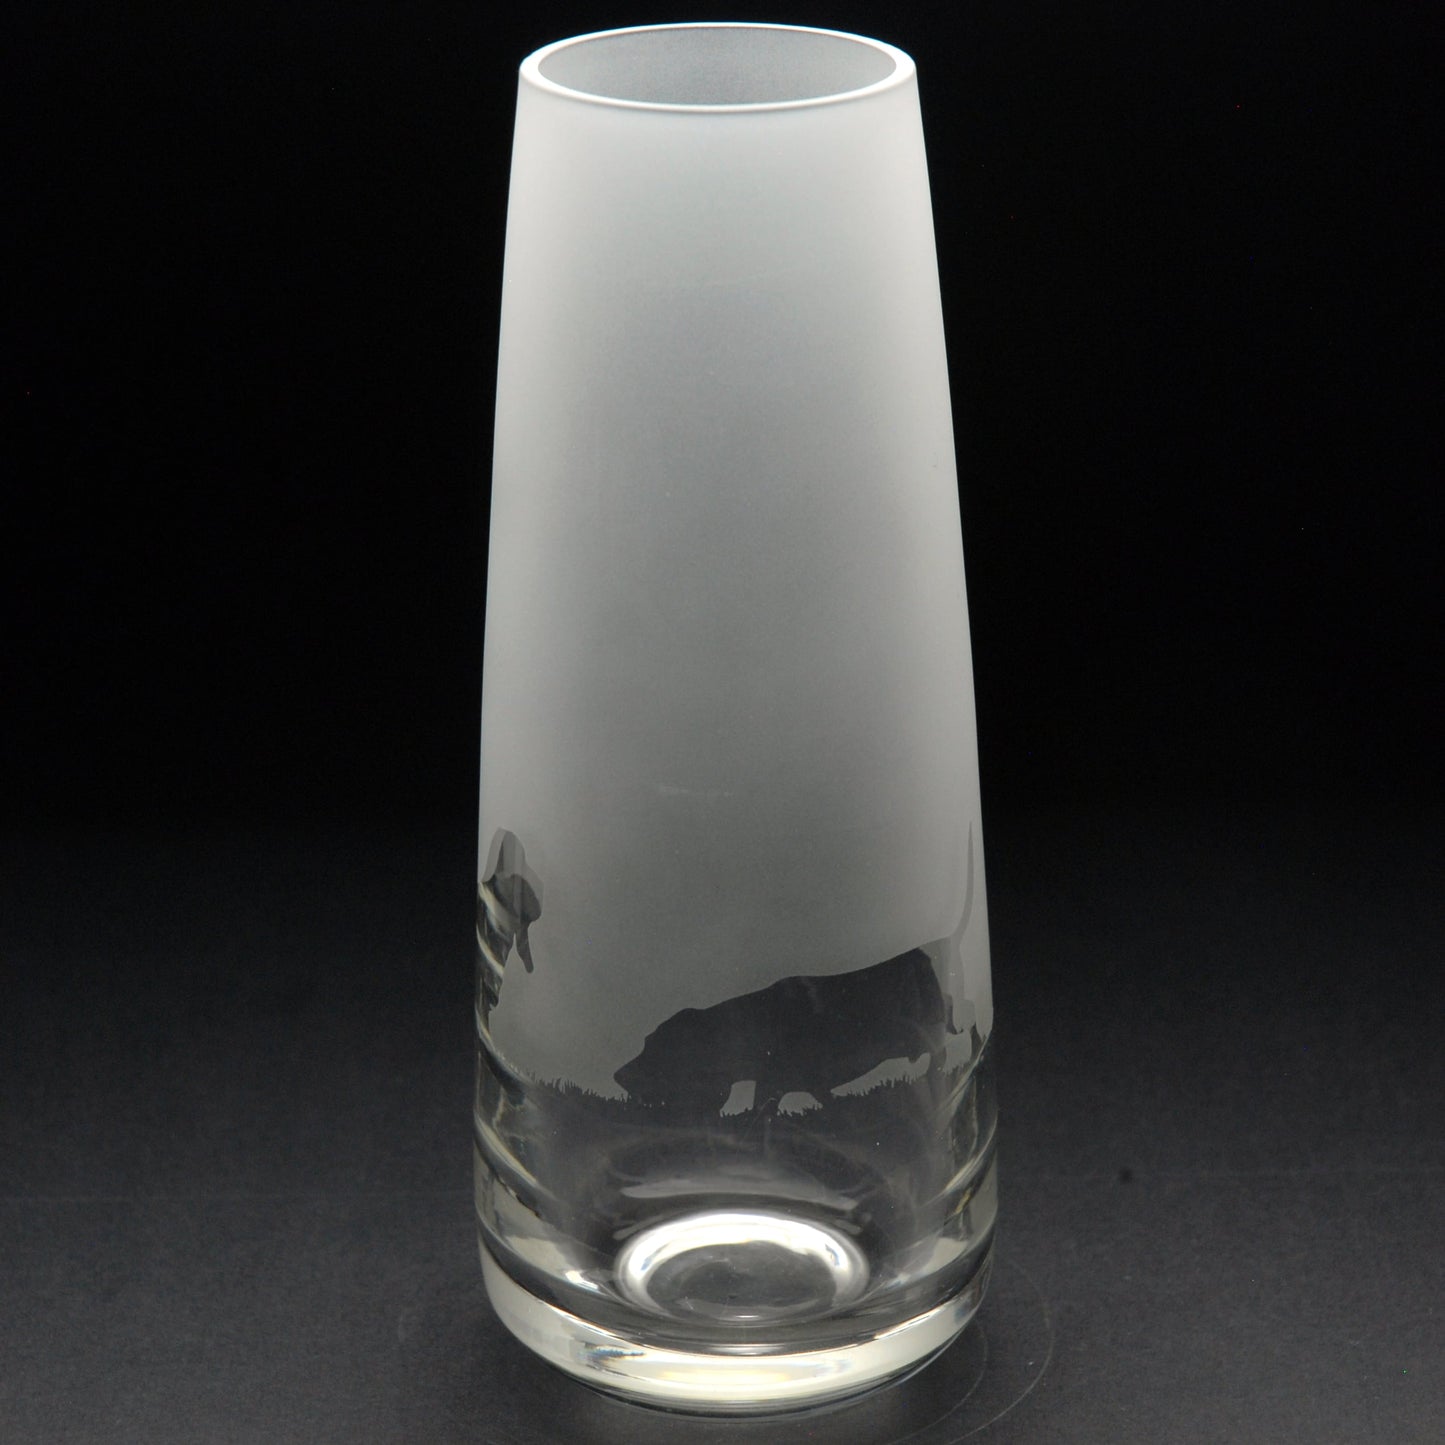 Basset Hound Dog Glass Bud Vase - 15cm - Hand Etched/Engraved Gift